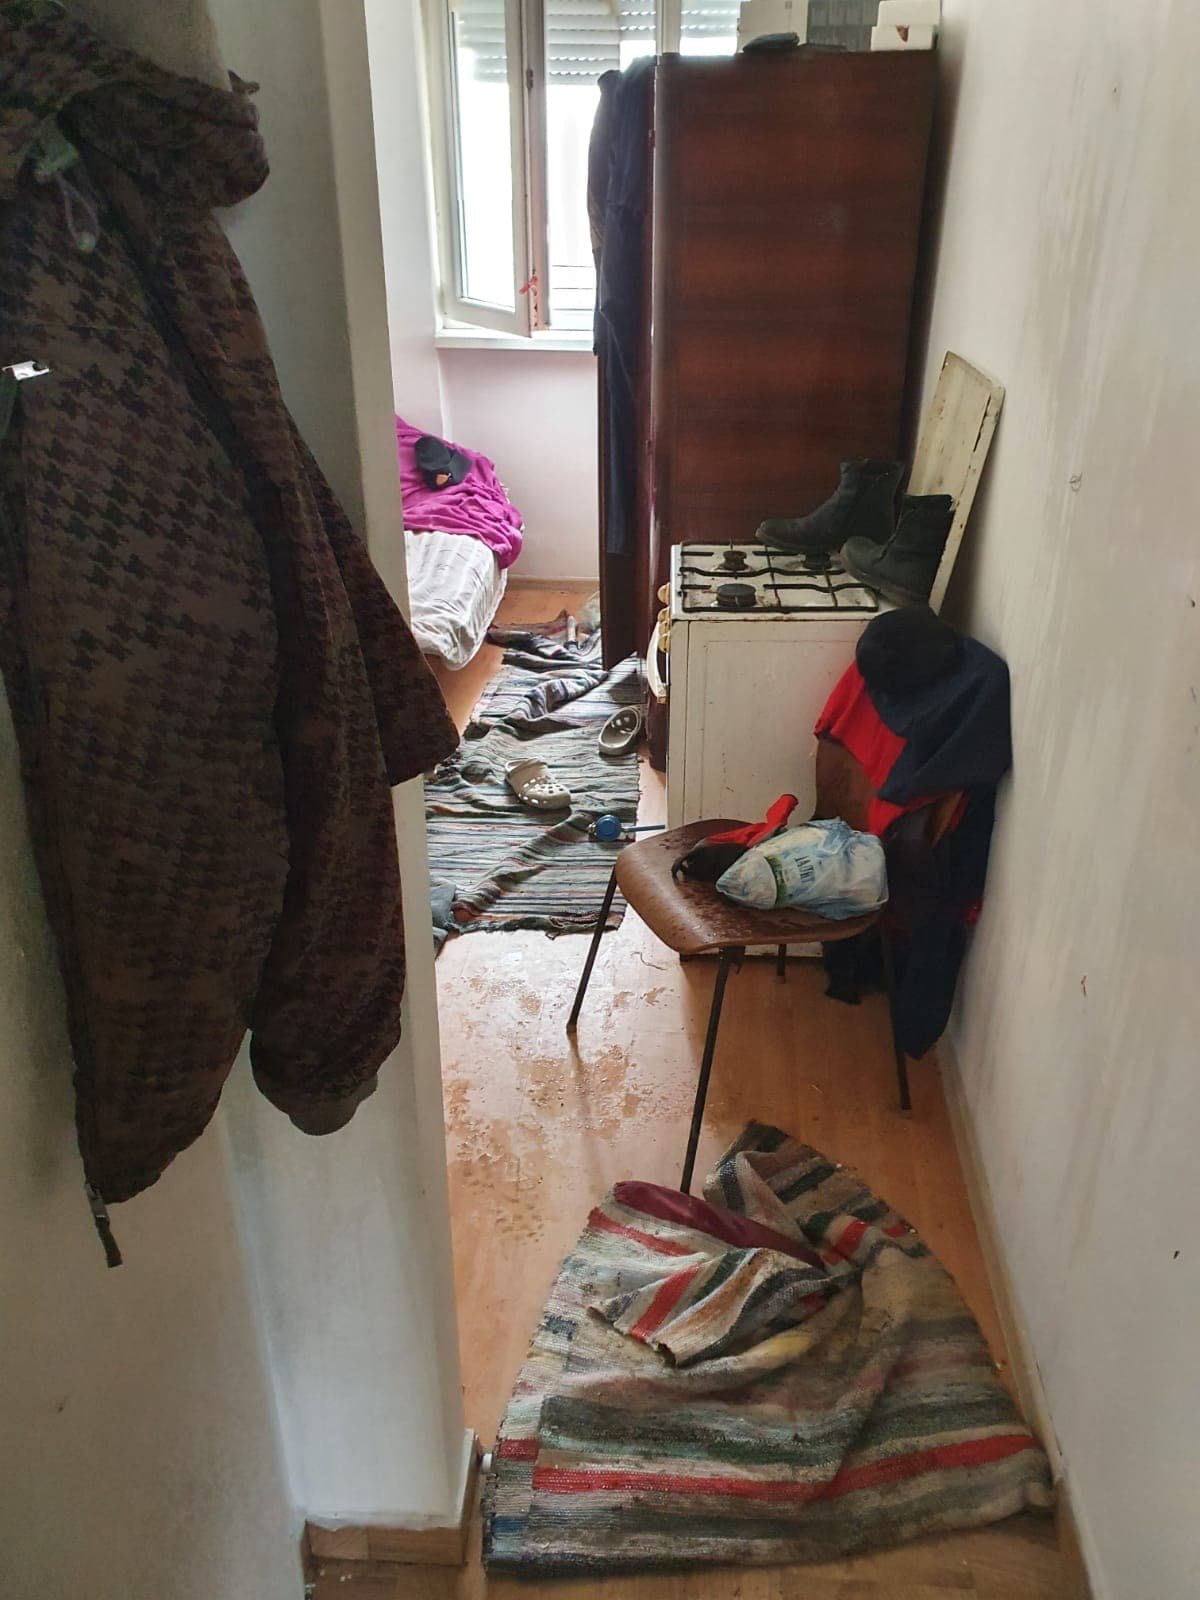 Füstbe borult egy lakás a gáztűzhelyen hagyott edény miatt, egy idős férfi életét vesztette